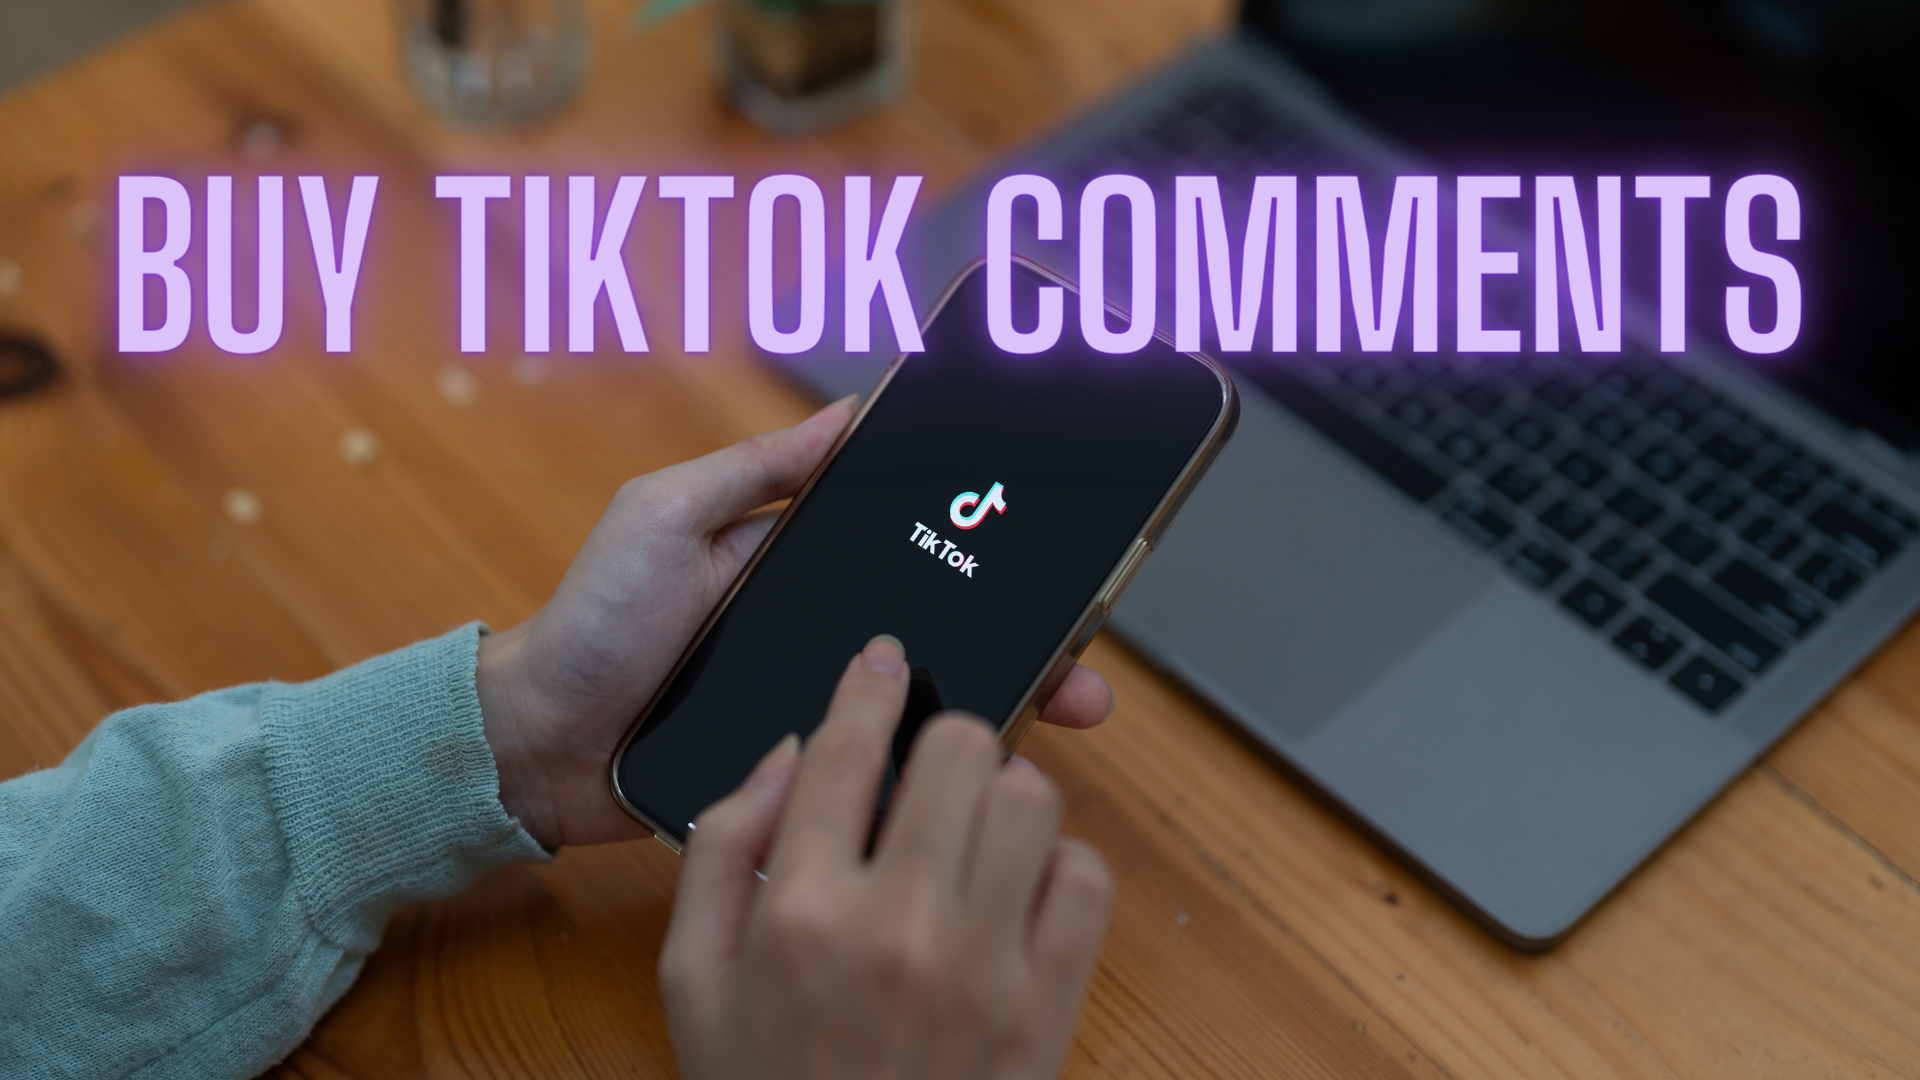 Buy TikTok Comments